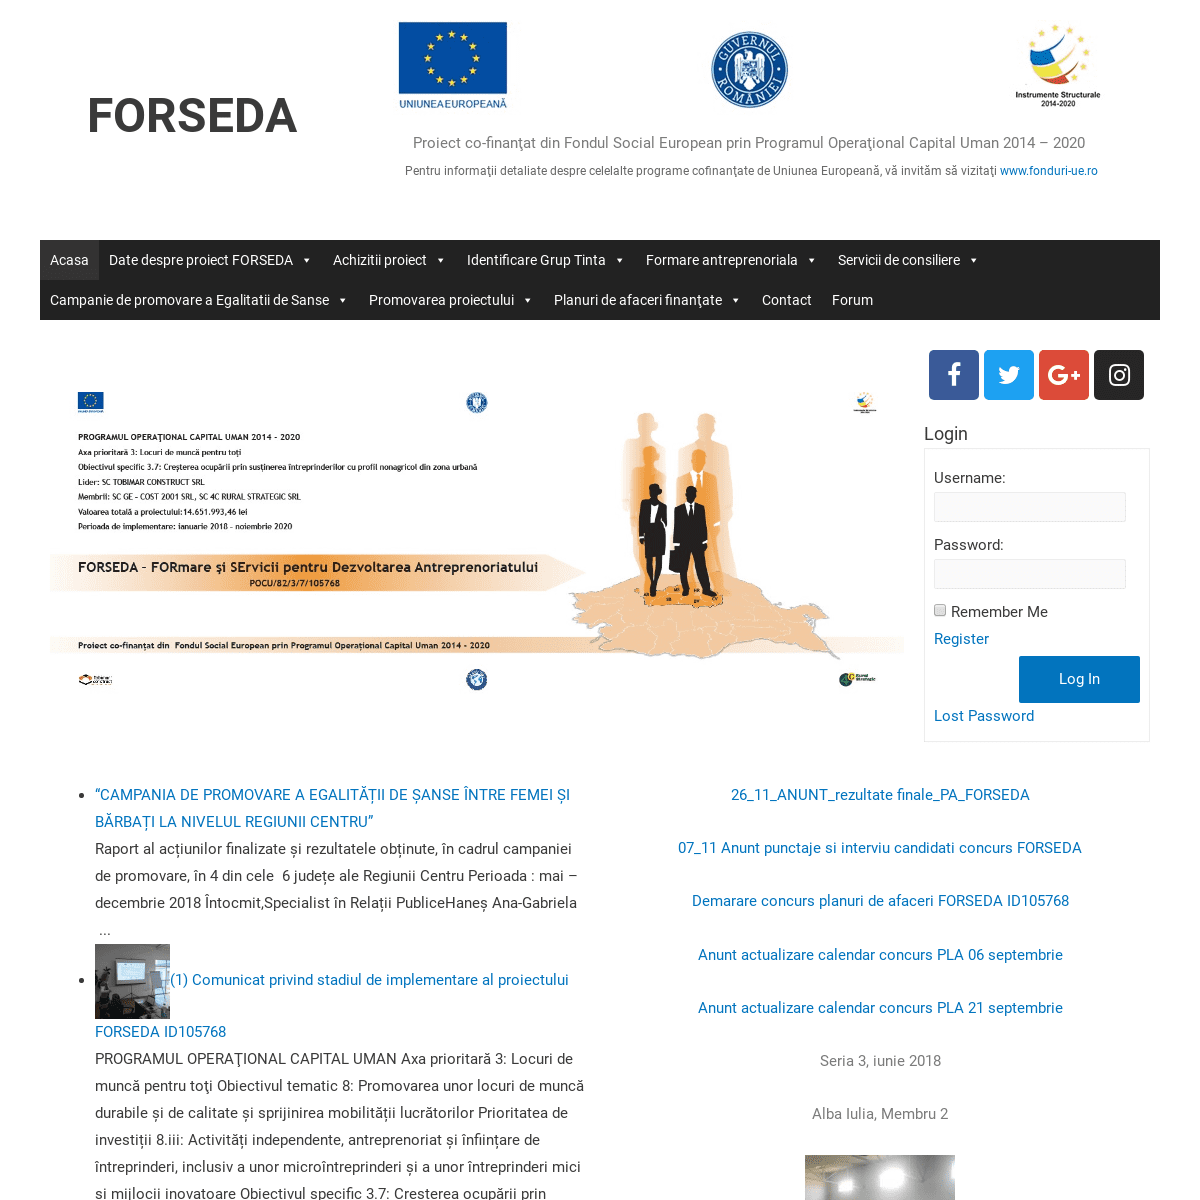 FORSEDA – Proiect co-finanţat din Fondul Social European prin Programul Operaţional Capital Uman 2014 – 2020